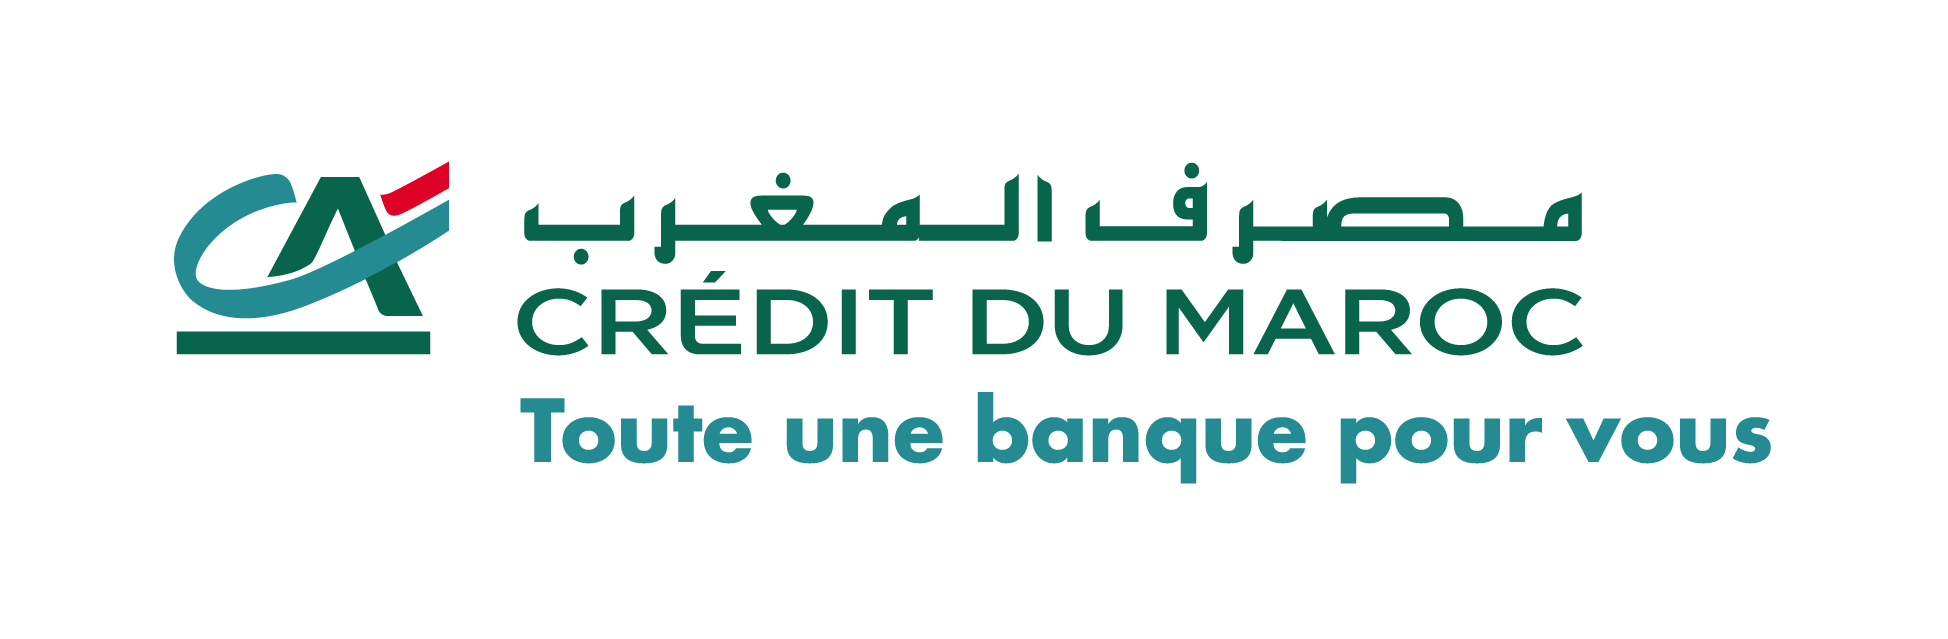 Crédit du Maroc dévoile sa nouvelle signature